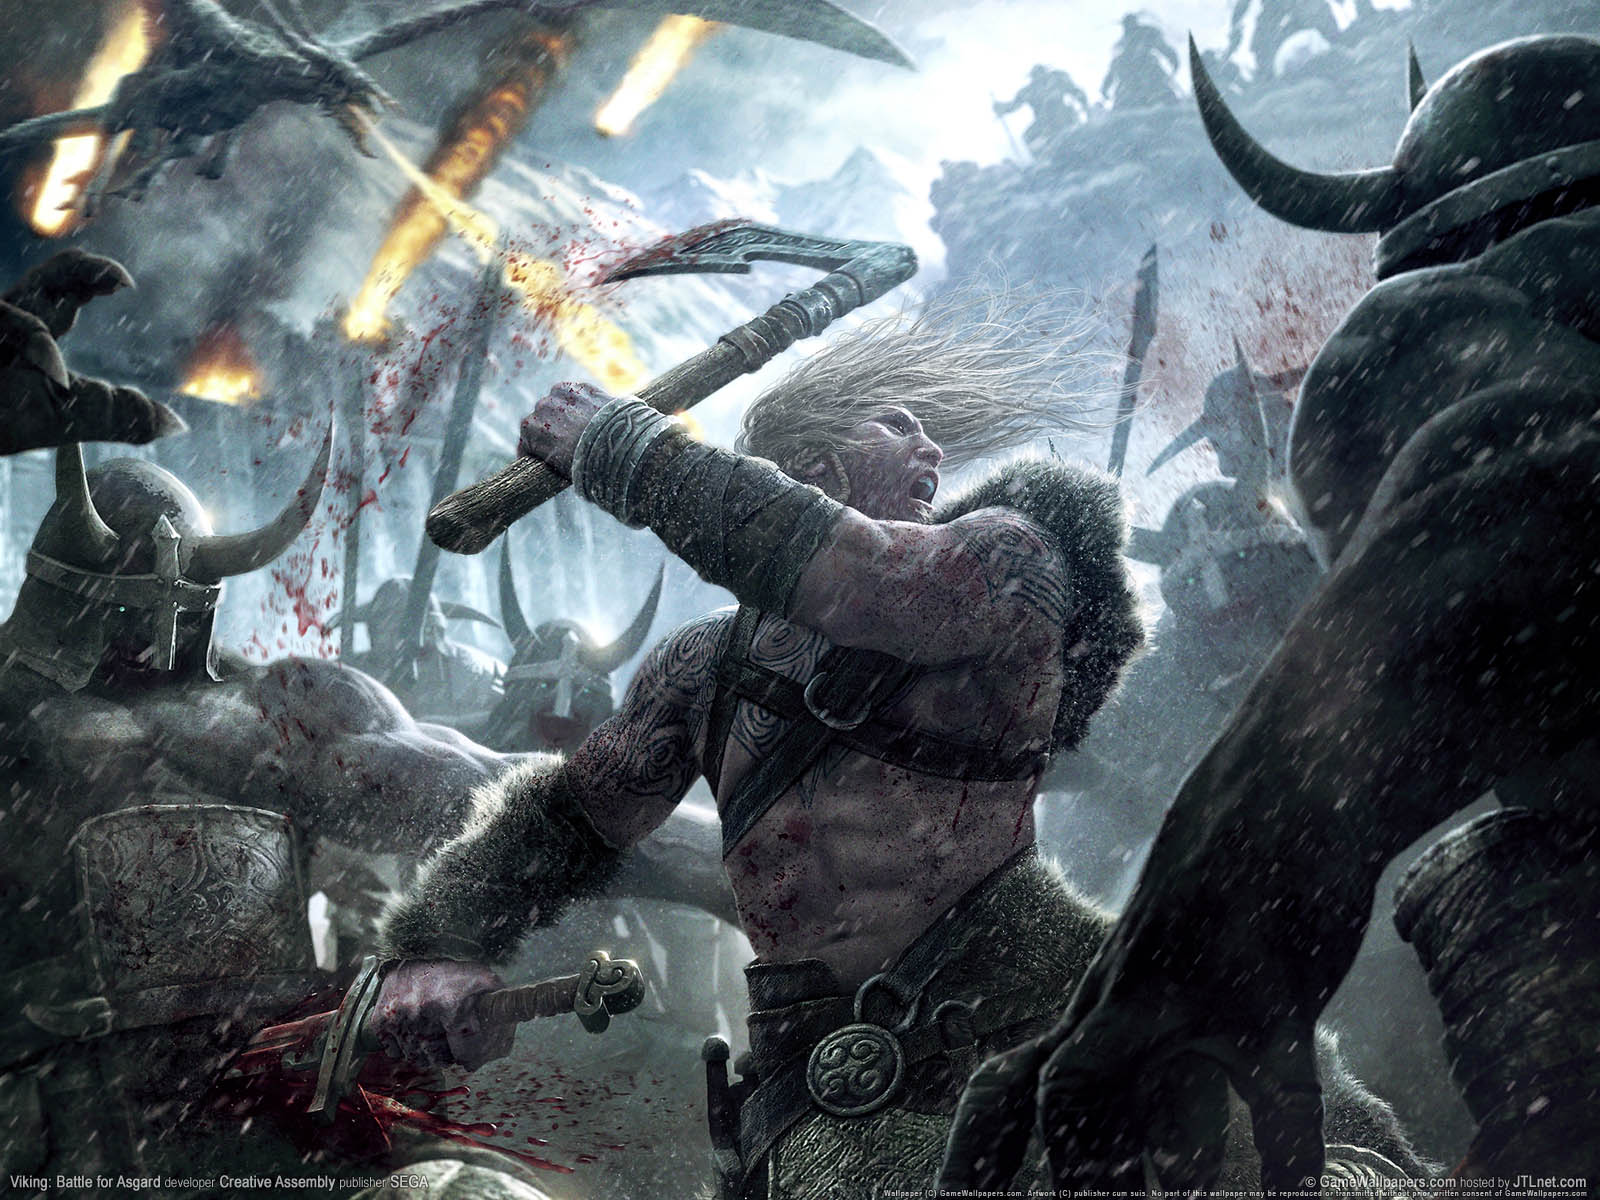 Viking%3A Battle for Asgard wallpaper 01 1600x1200